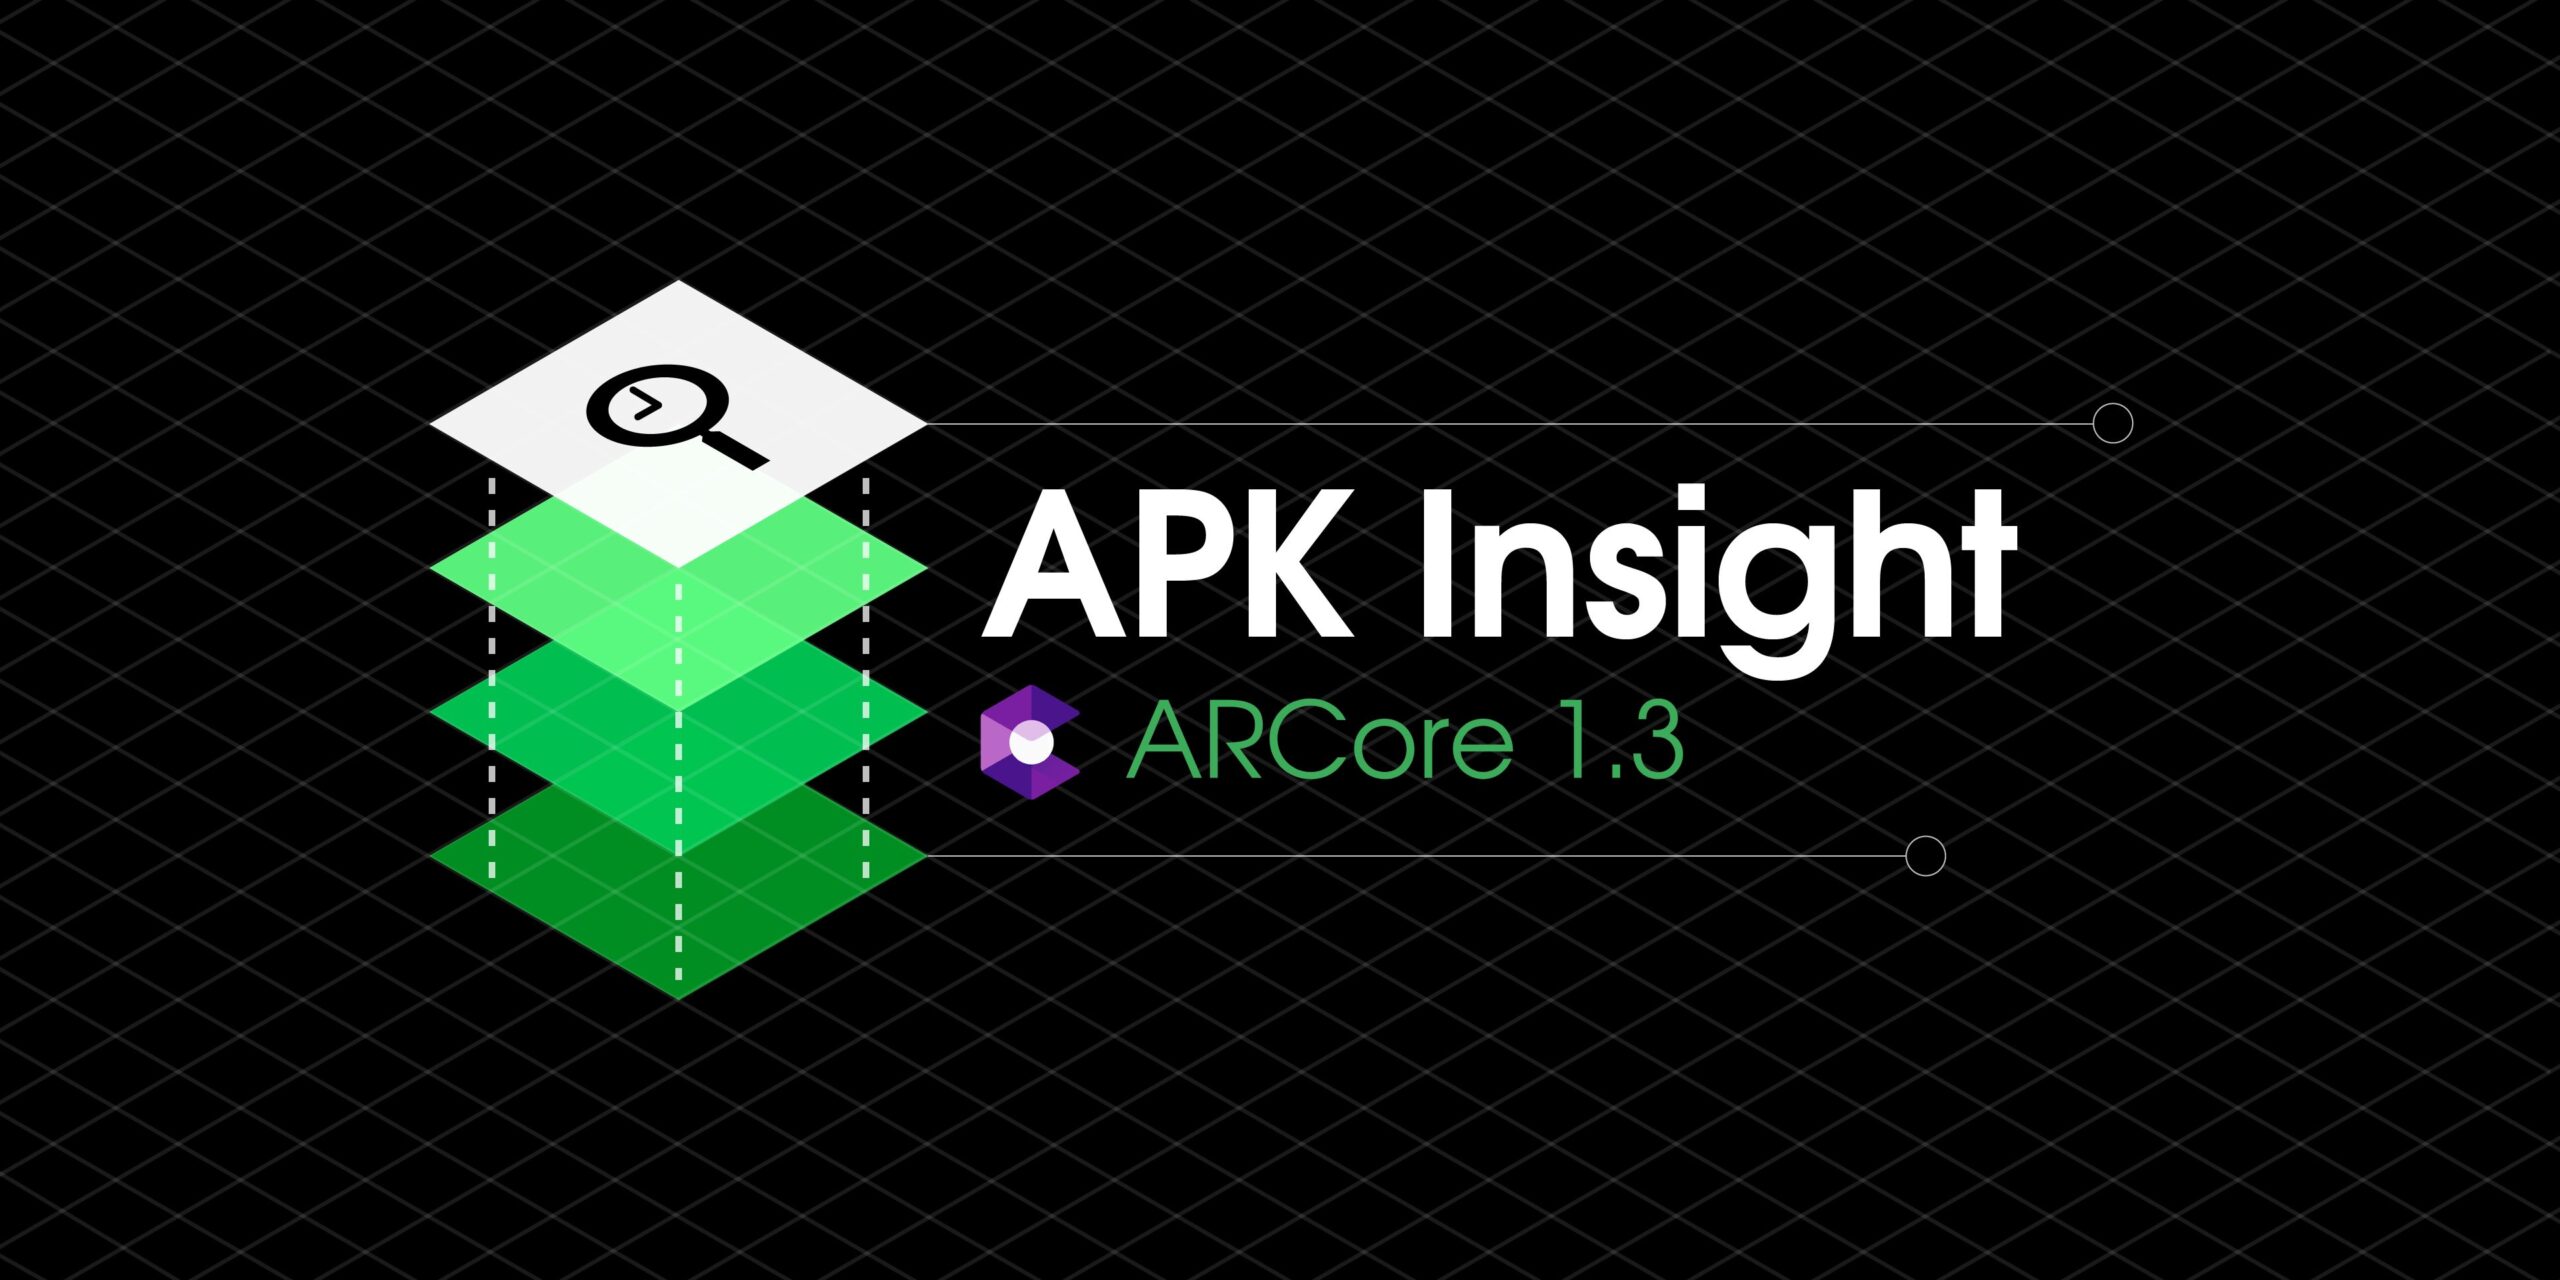 AR Autocolantes 1.3 separa todos os pacotes de adesivos incluídos, emagrecimento por 50 MB [APK Insight]